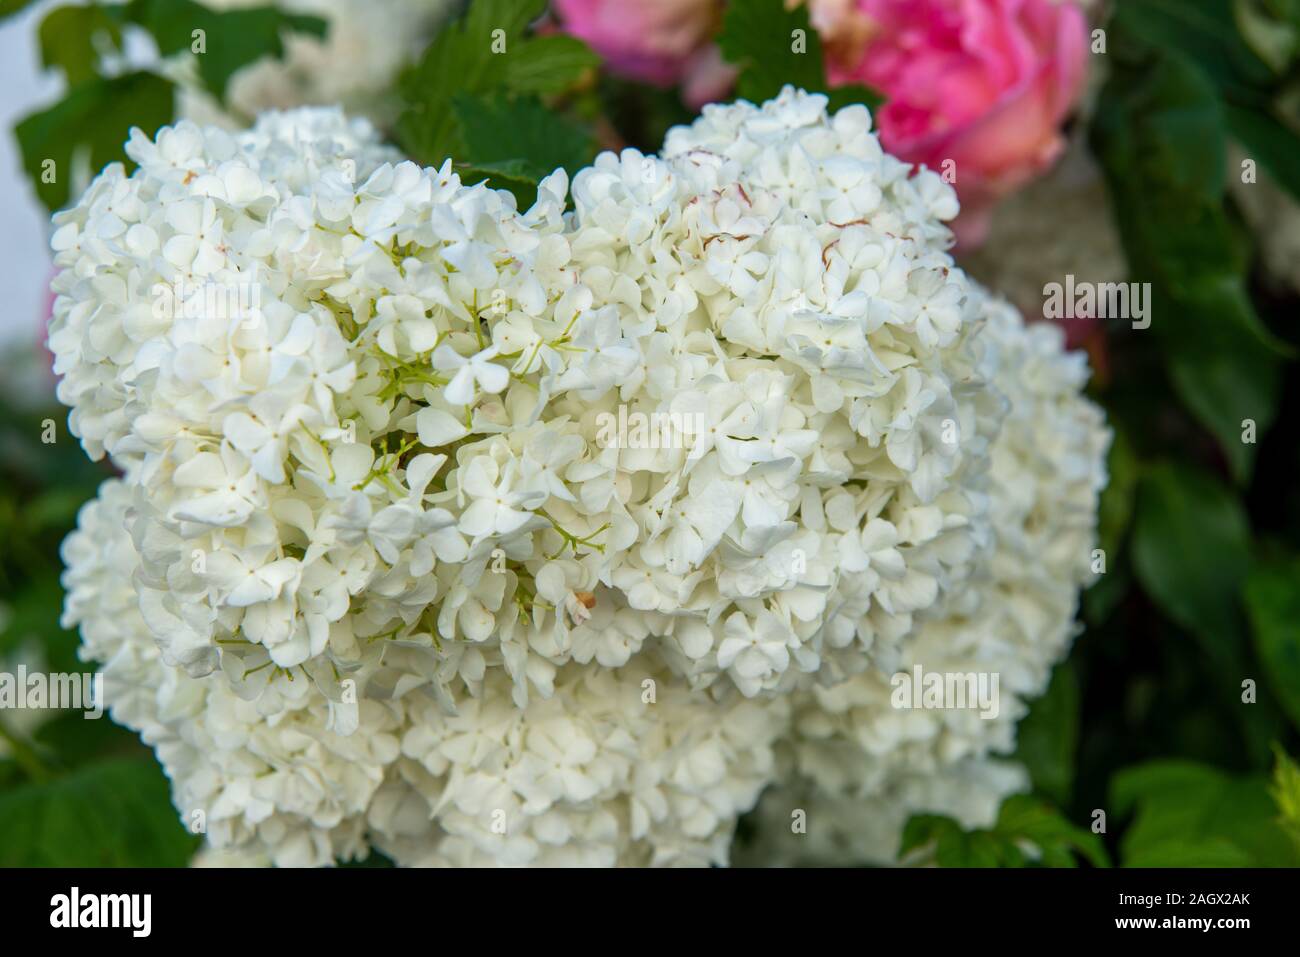 Nahaufnahme einer weiß blühenden Blume Foto Stock